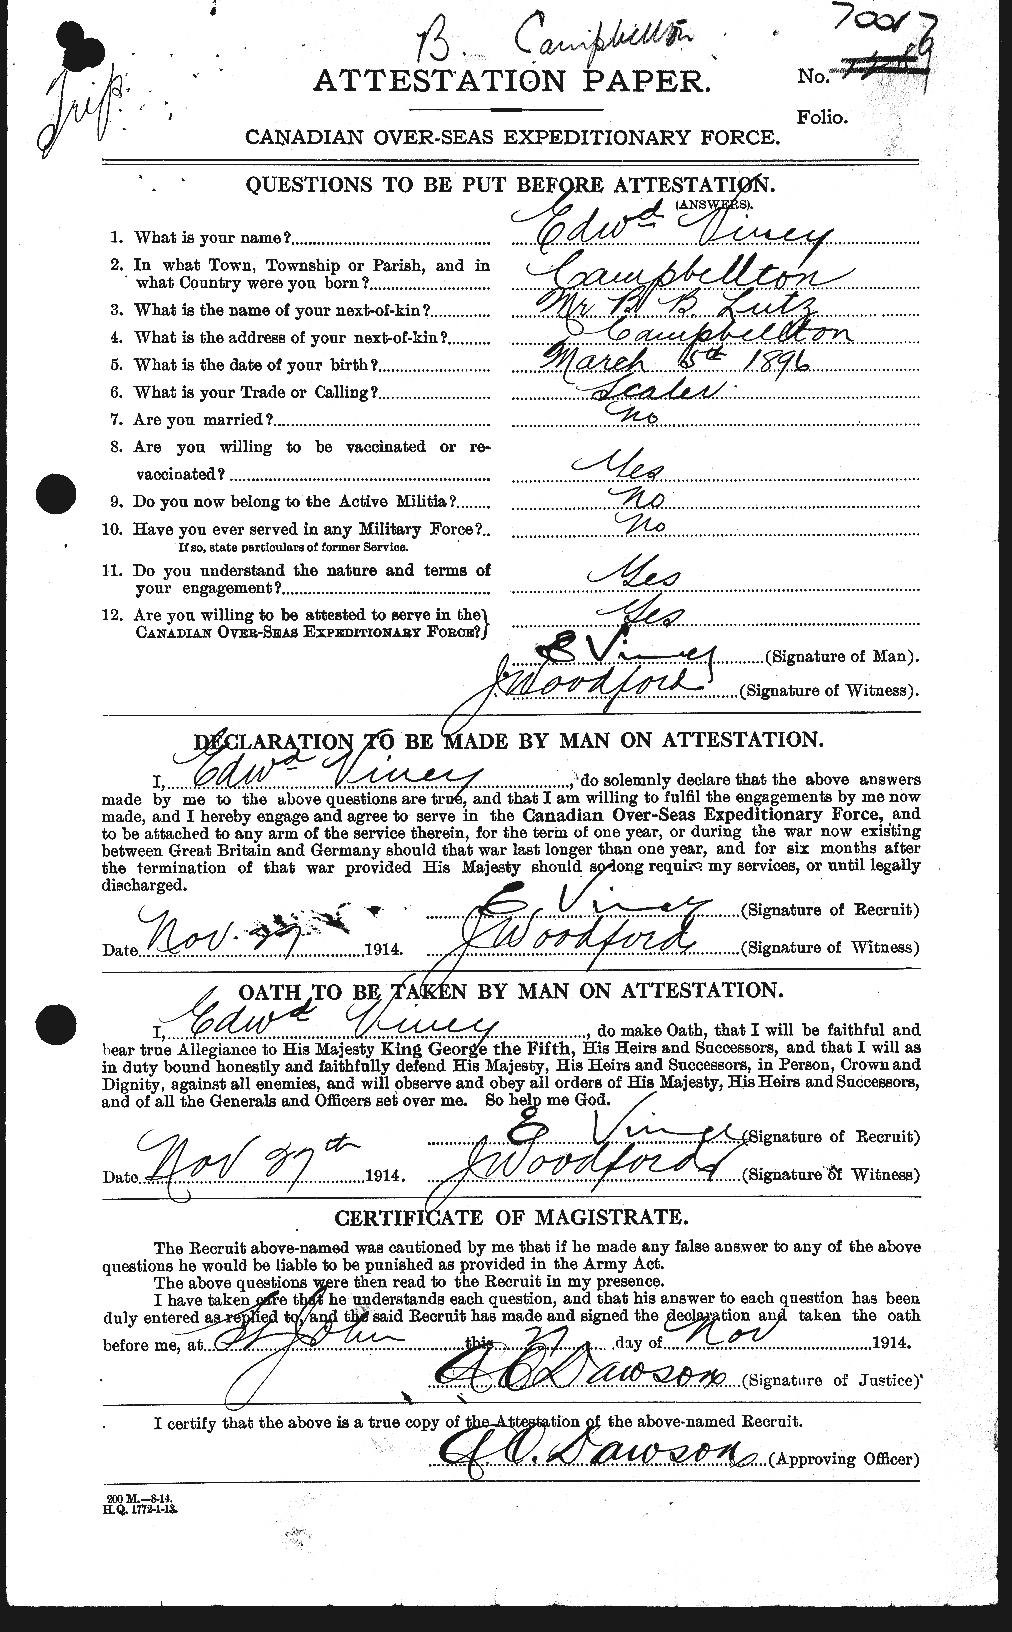 Dossiers du Personnel de la Première Guerre mondiale - CEC 656633a